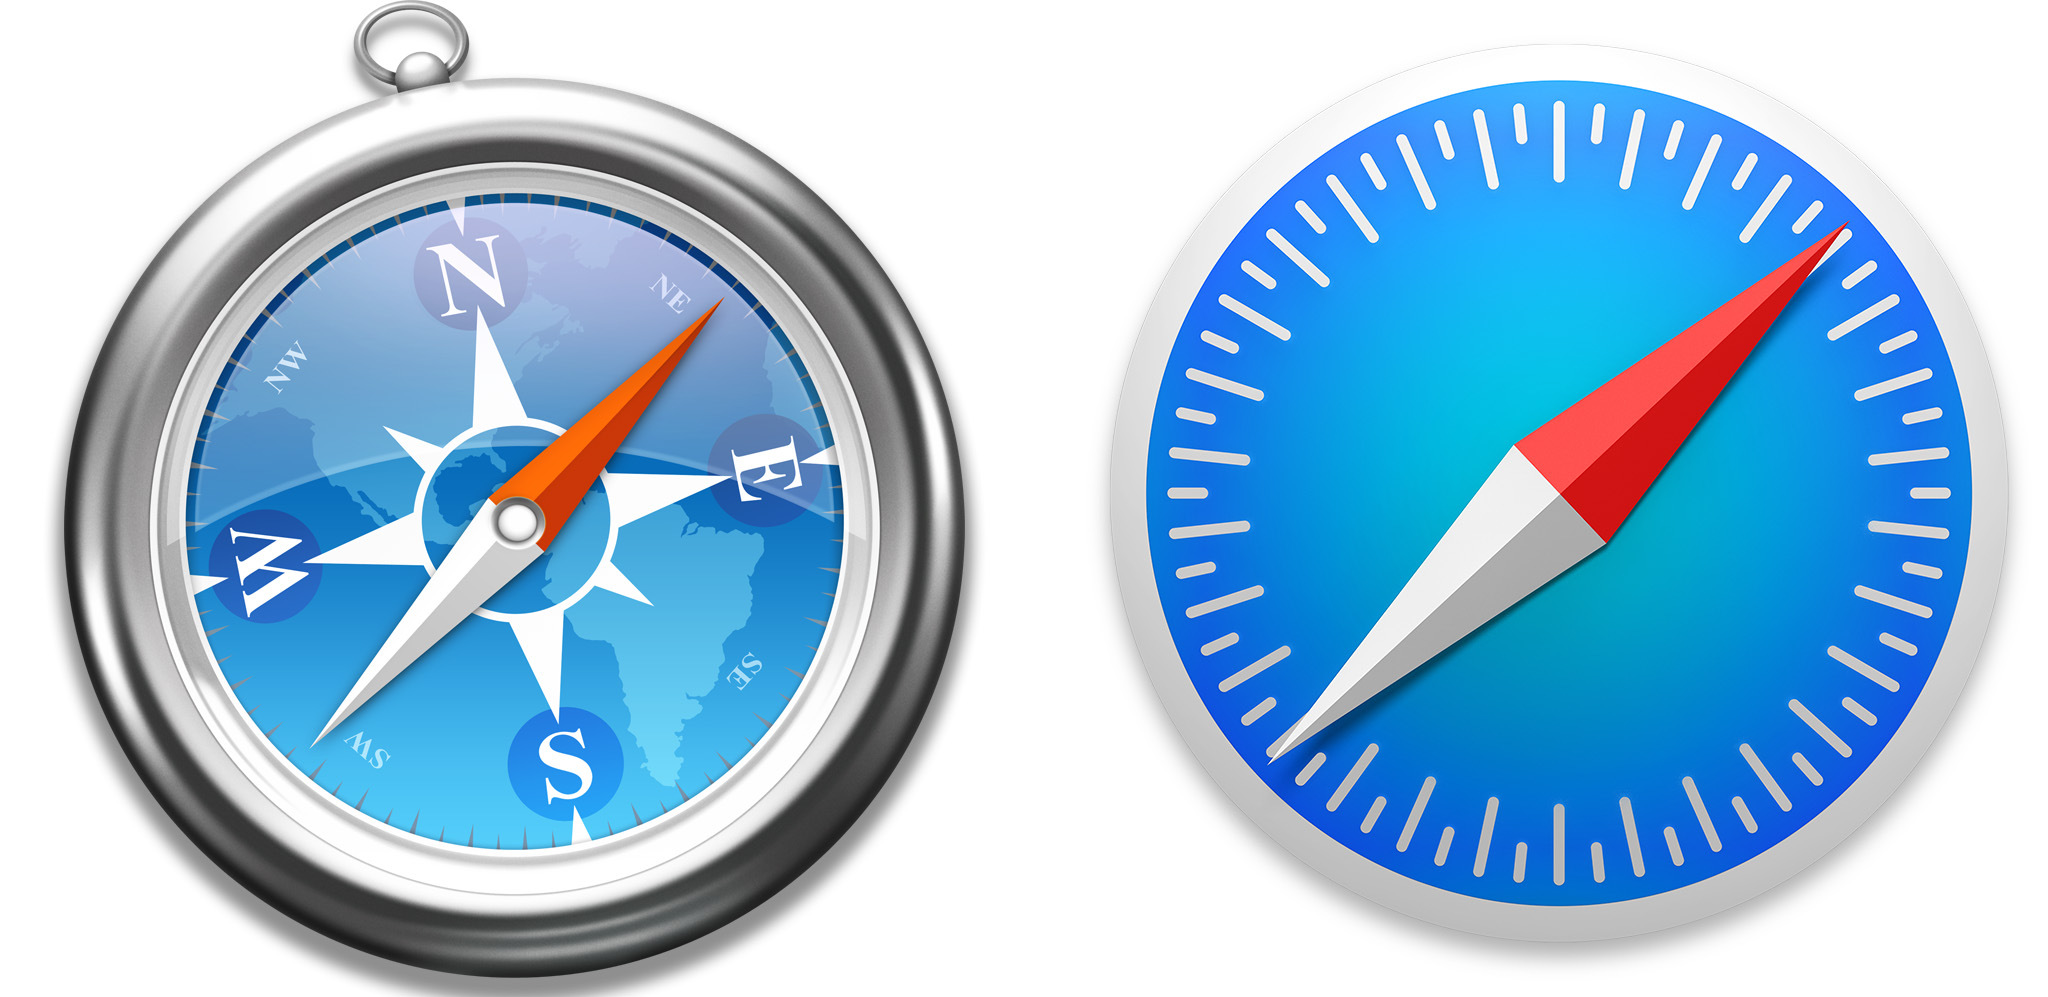 Yosemite Mac OS X Safari Icon